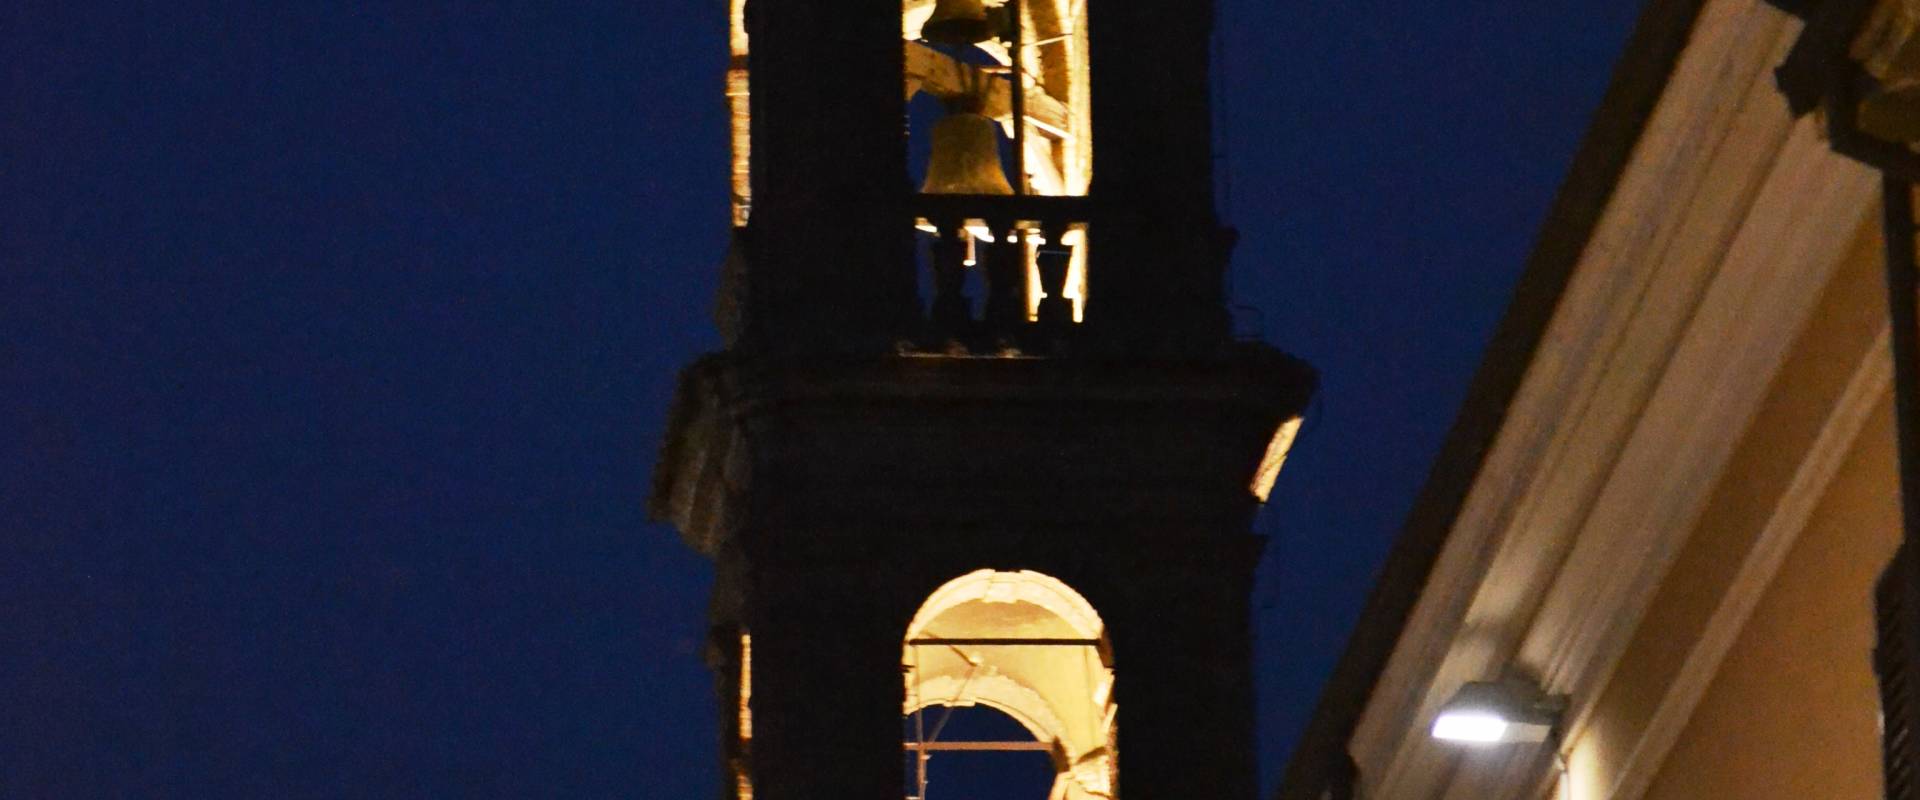 Torre by night foto di Pier giorgio